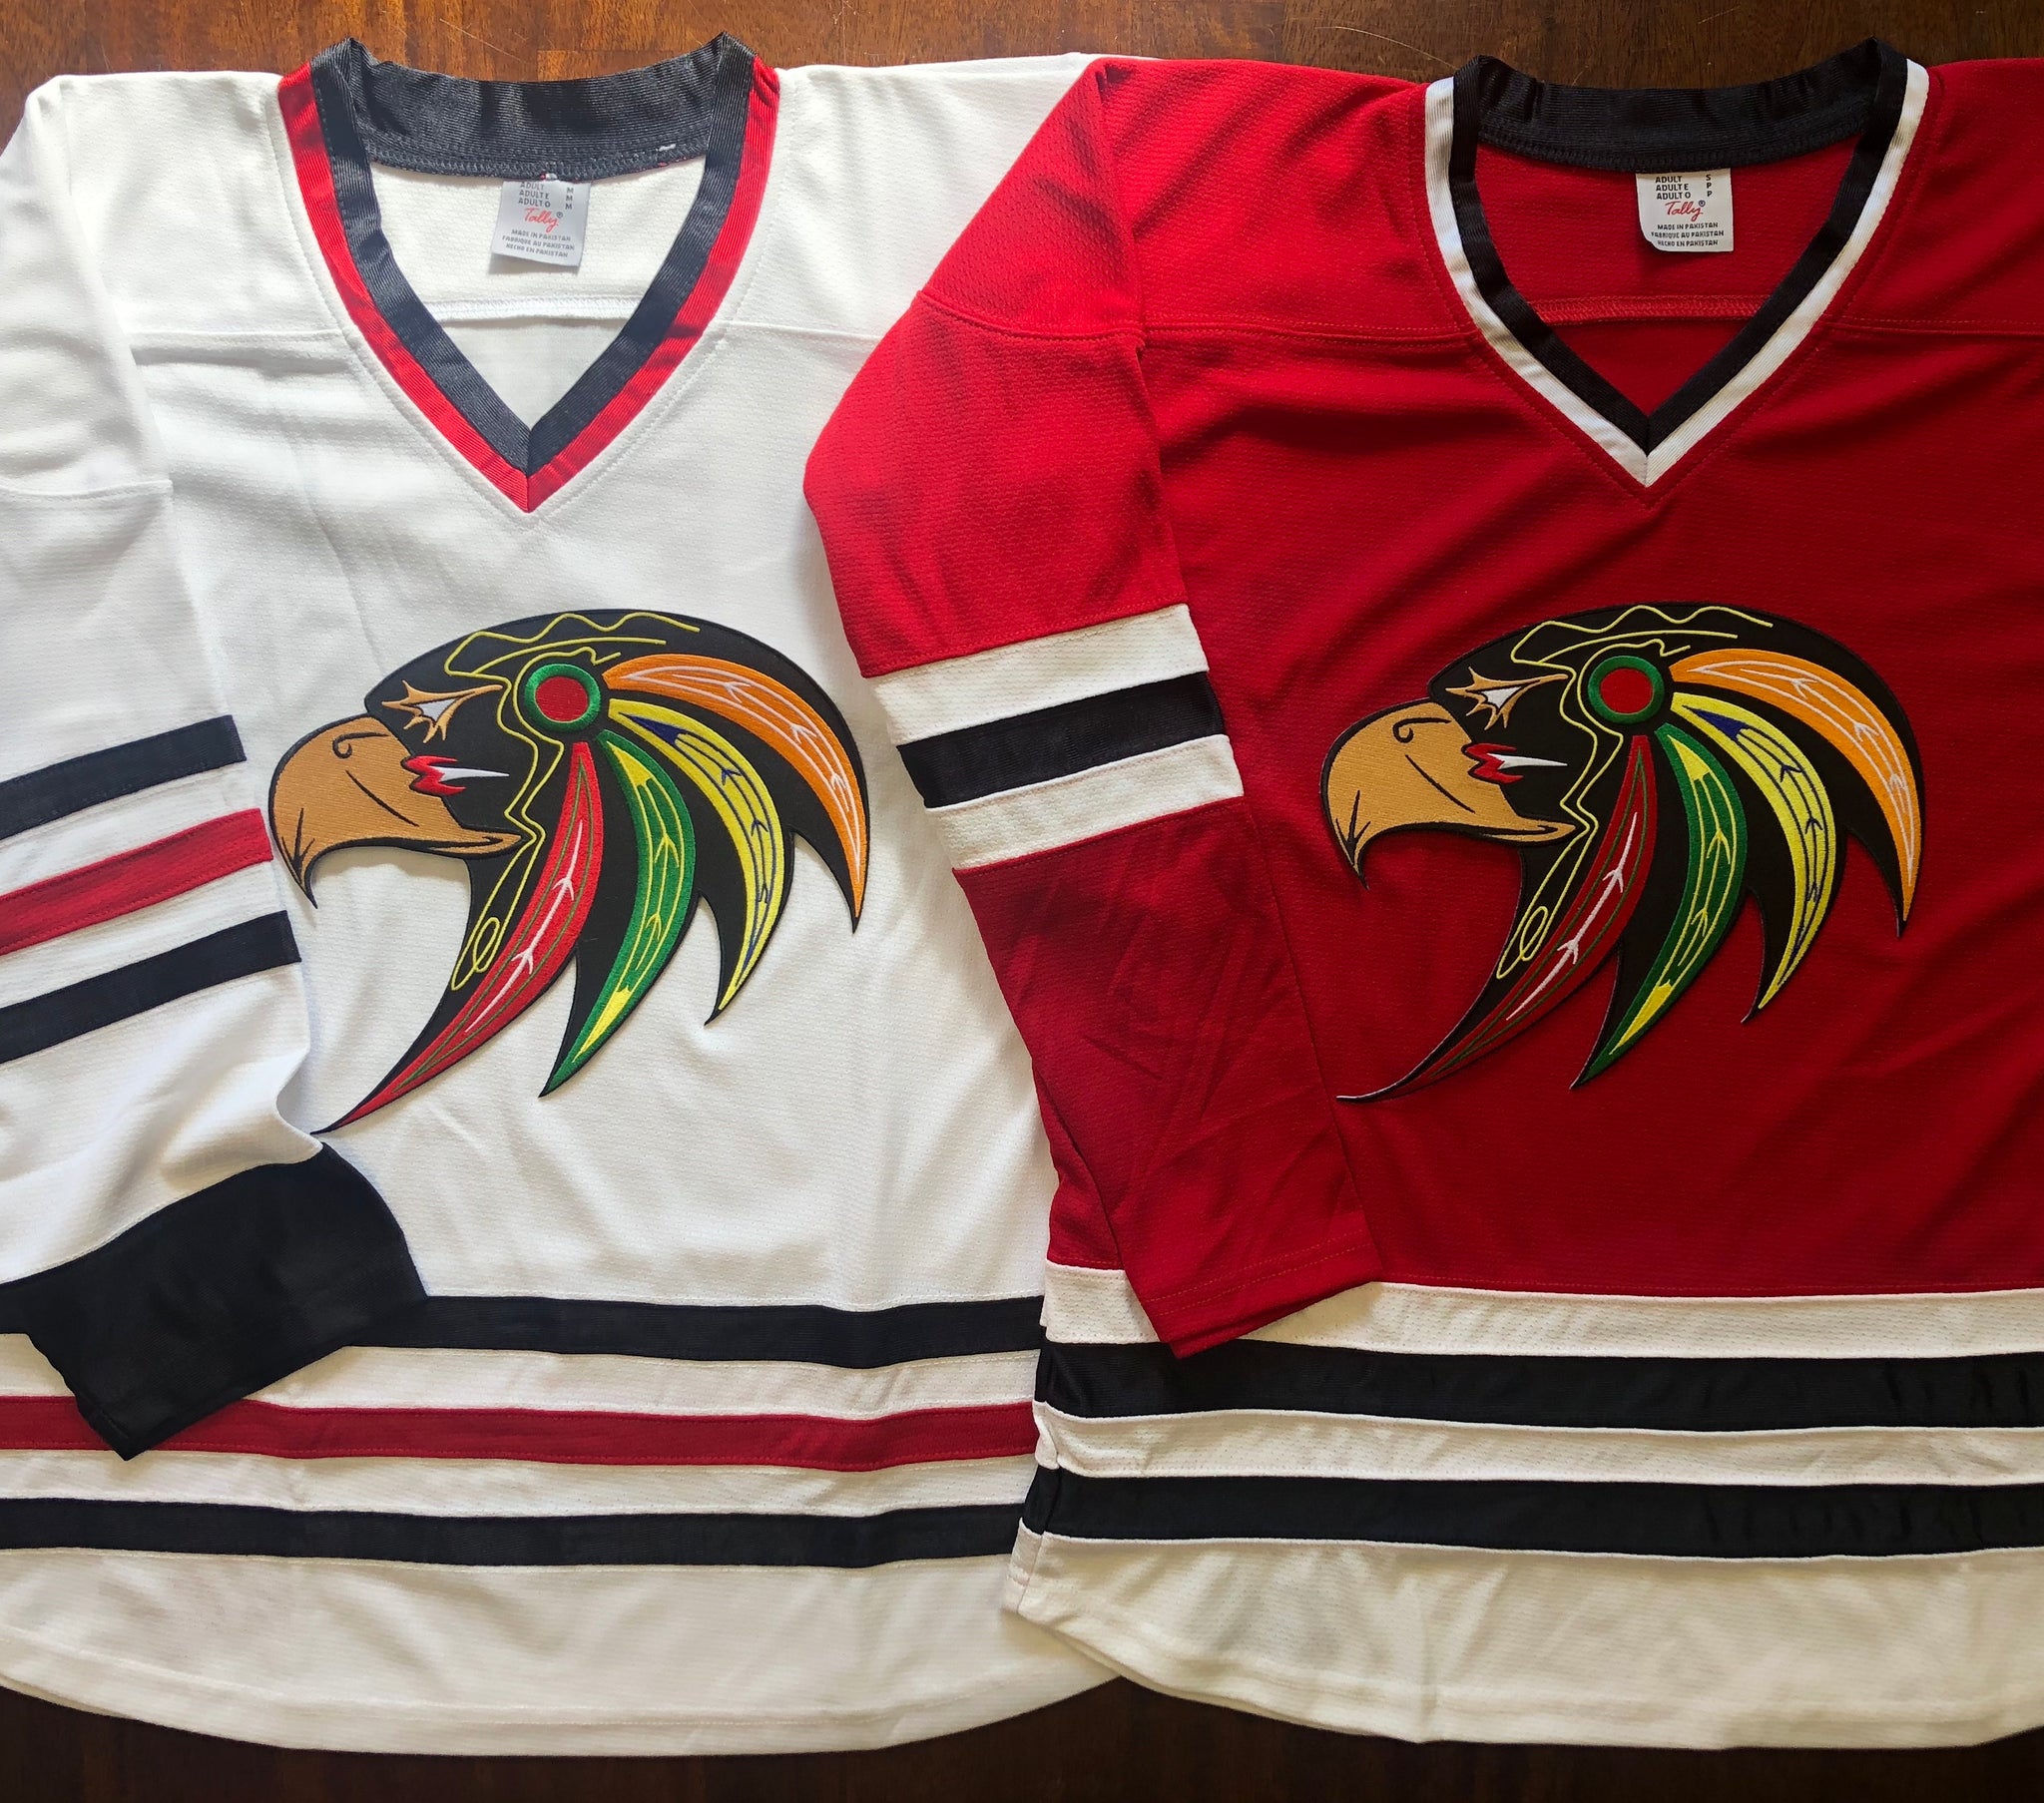 Custom Hockey Jerseys - Discount Hockey